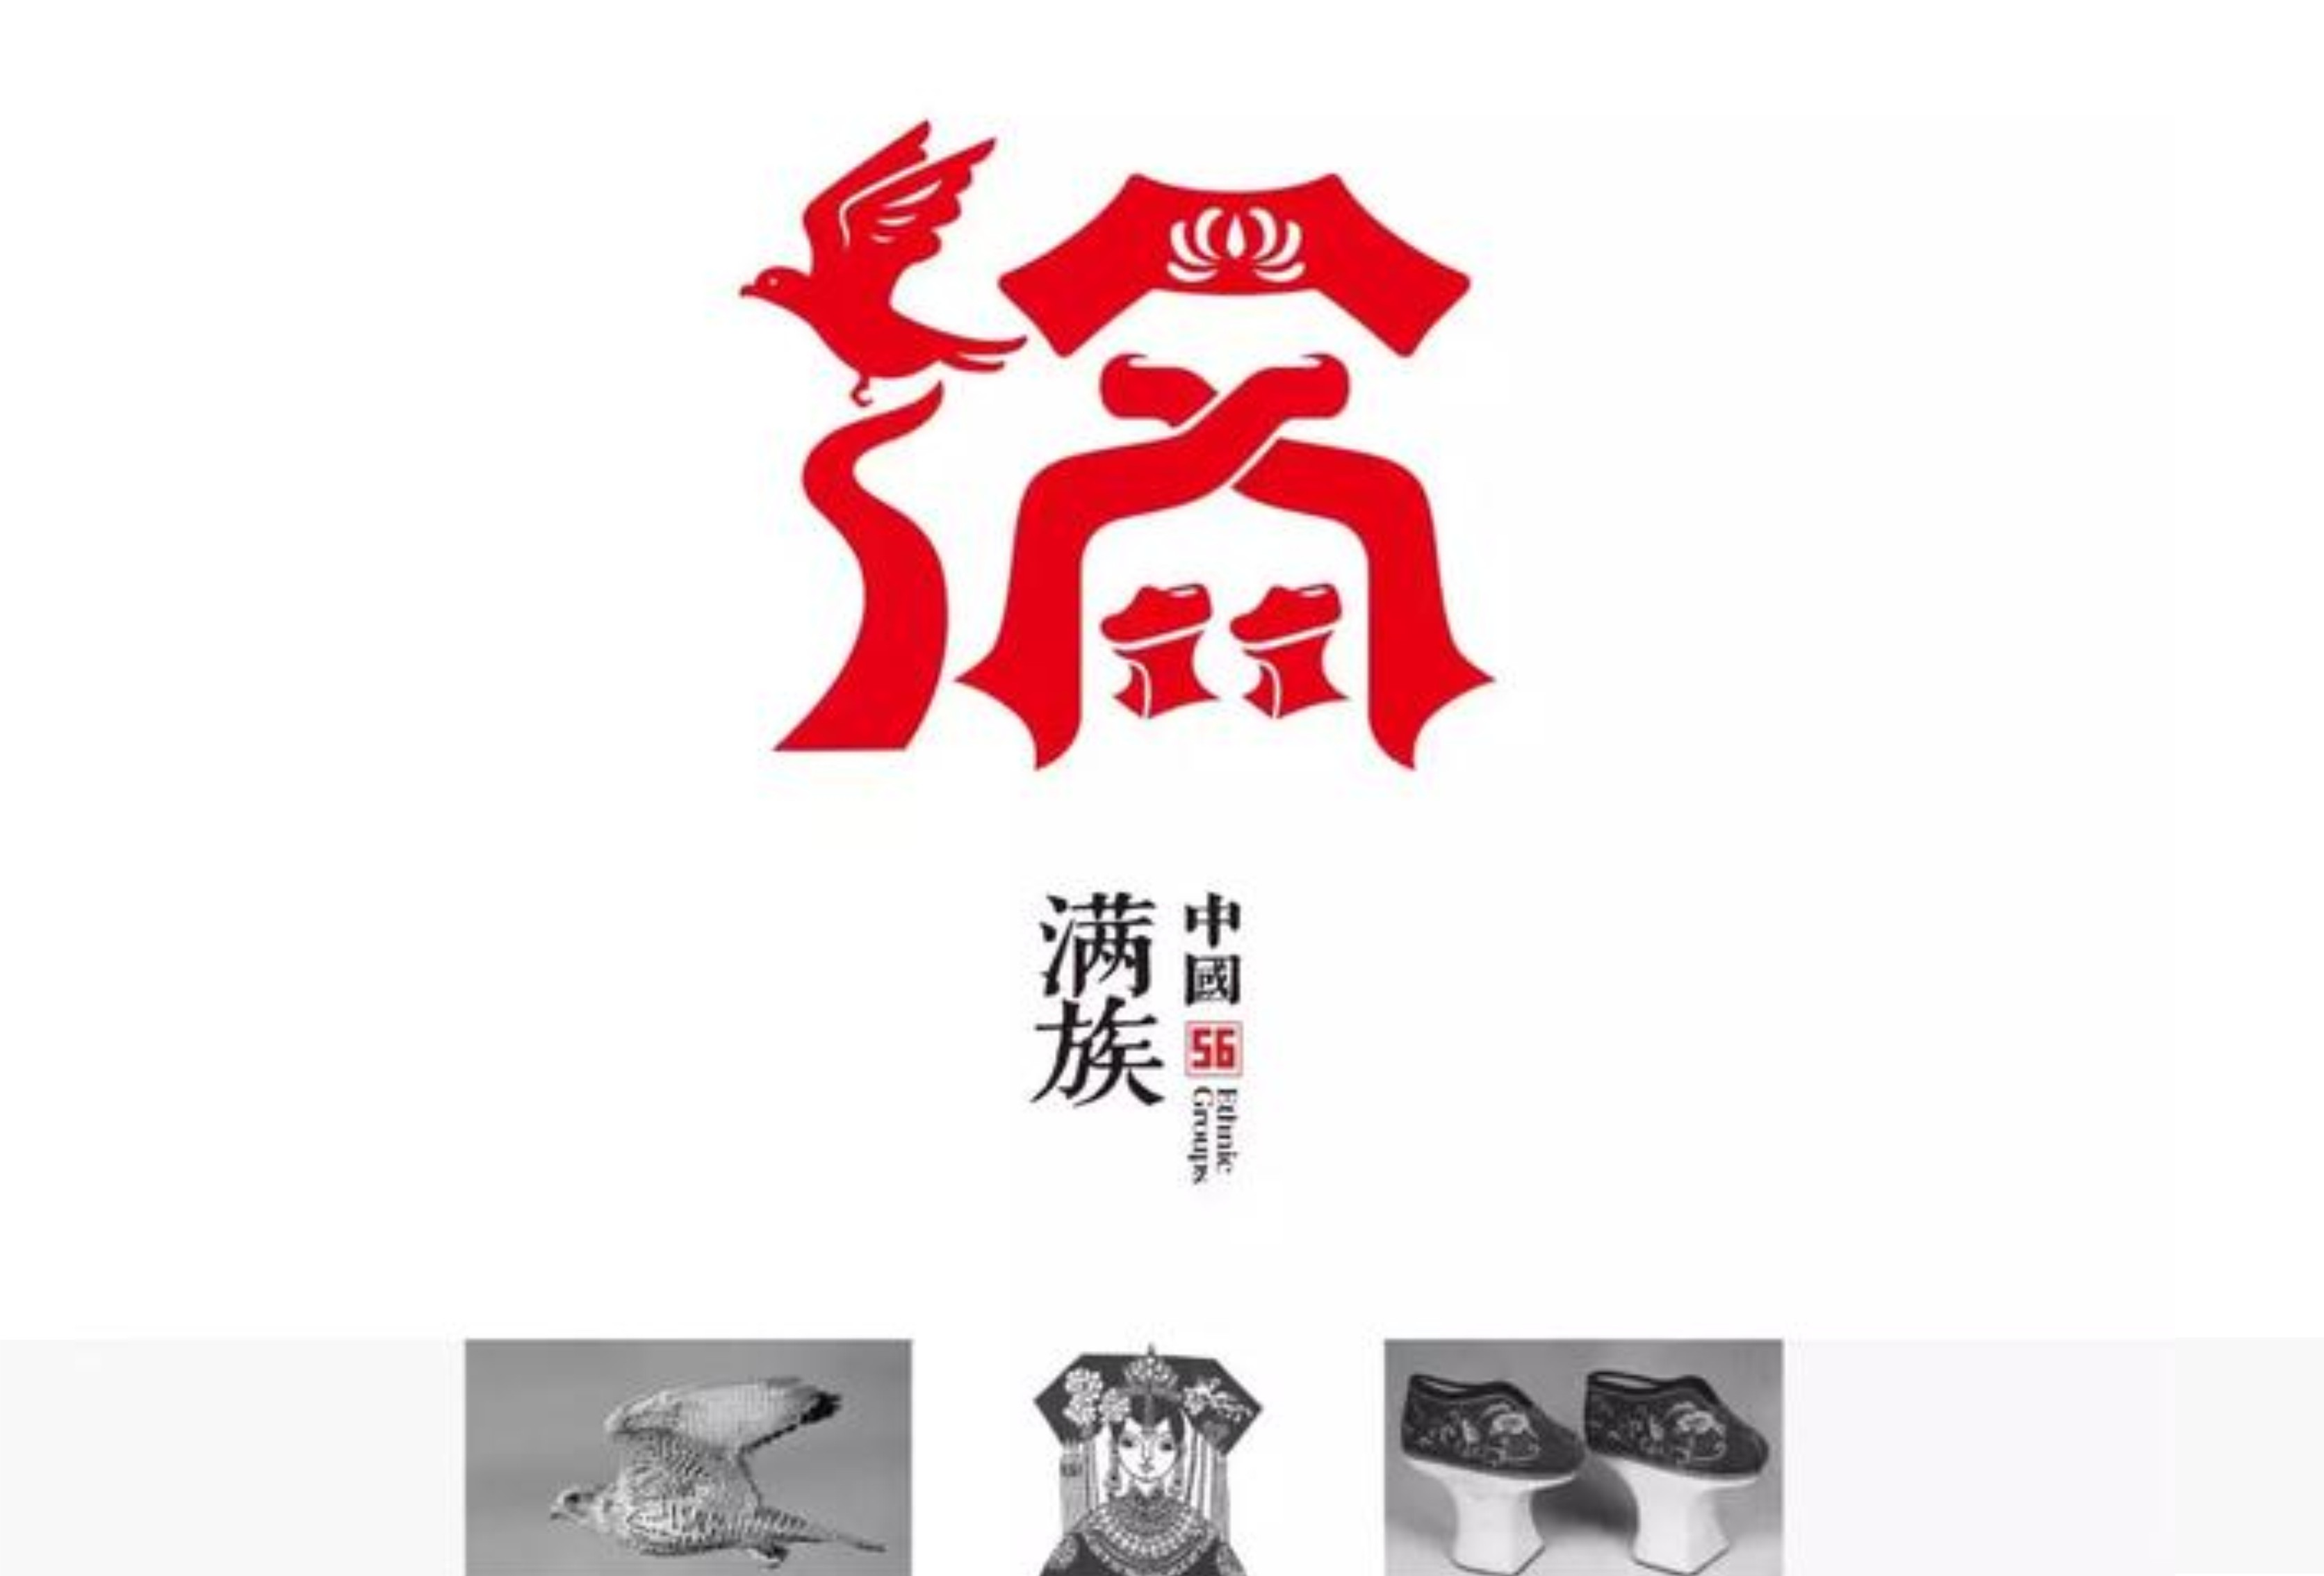 郑州56个民族标志创意设计 快来瞅一瞅吧!